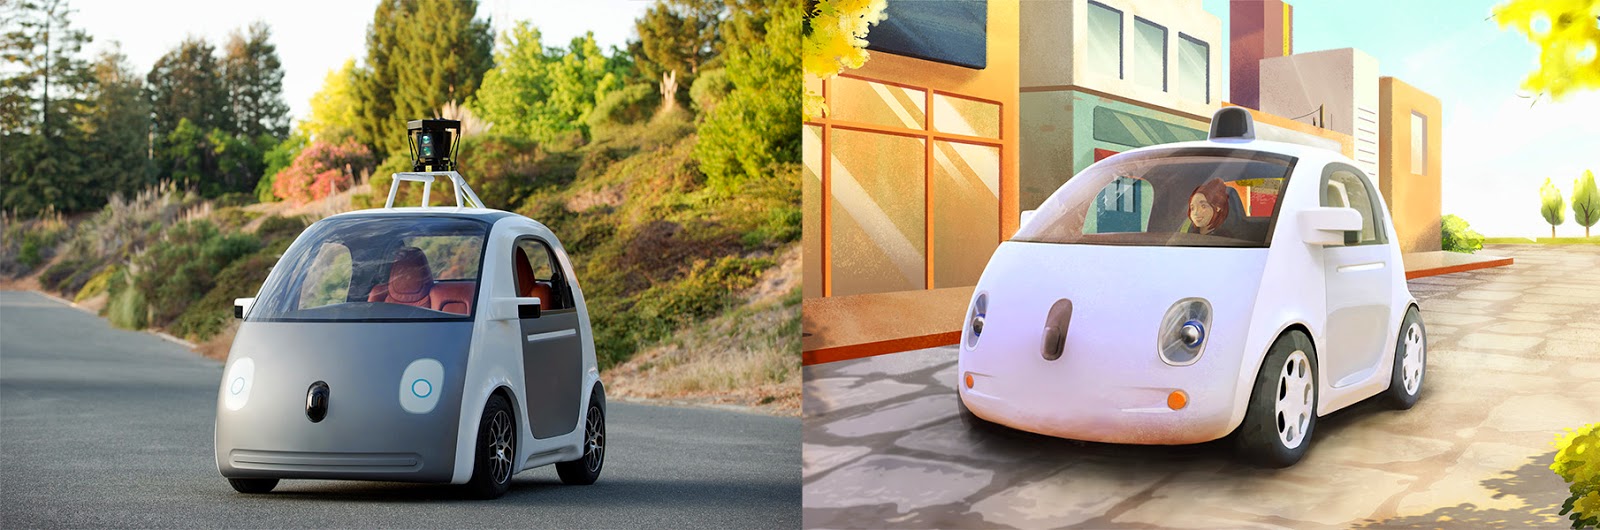 La voiture autonome de Google a été présentée en mai dernier (ici à gauche) mais la forme extérieure n'était qu'une maquette. À droite, un dessin de ce à quoi elle pourrait ressembler. Google ne prévoit ni volant, ni pédales mais la législation imposeront peut-être des commandes pour que le passager puisse redevenir conducteur. © Google